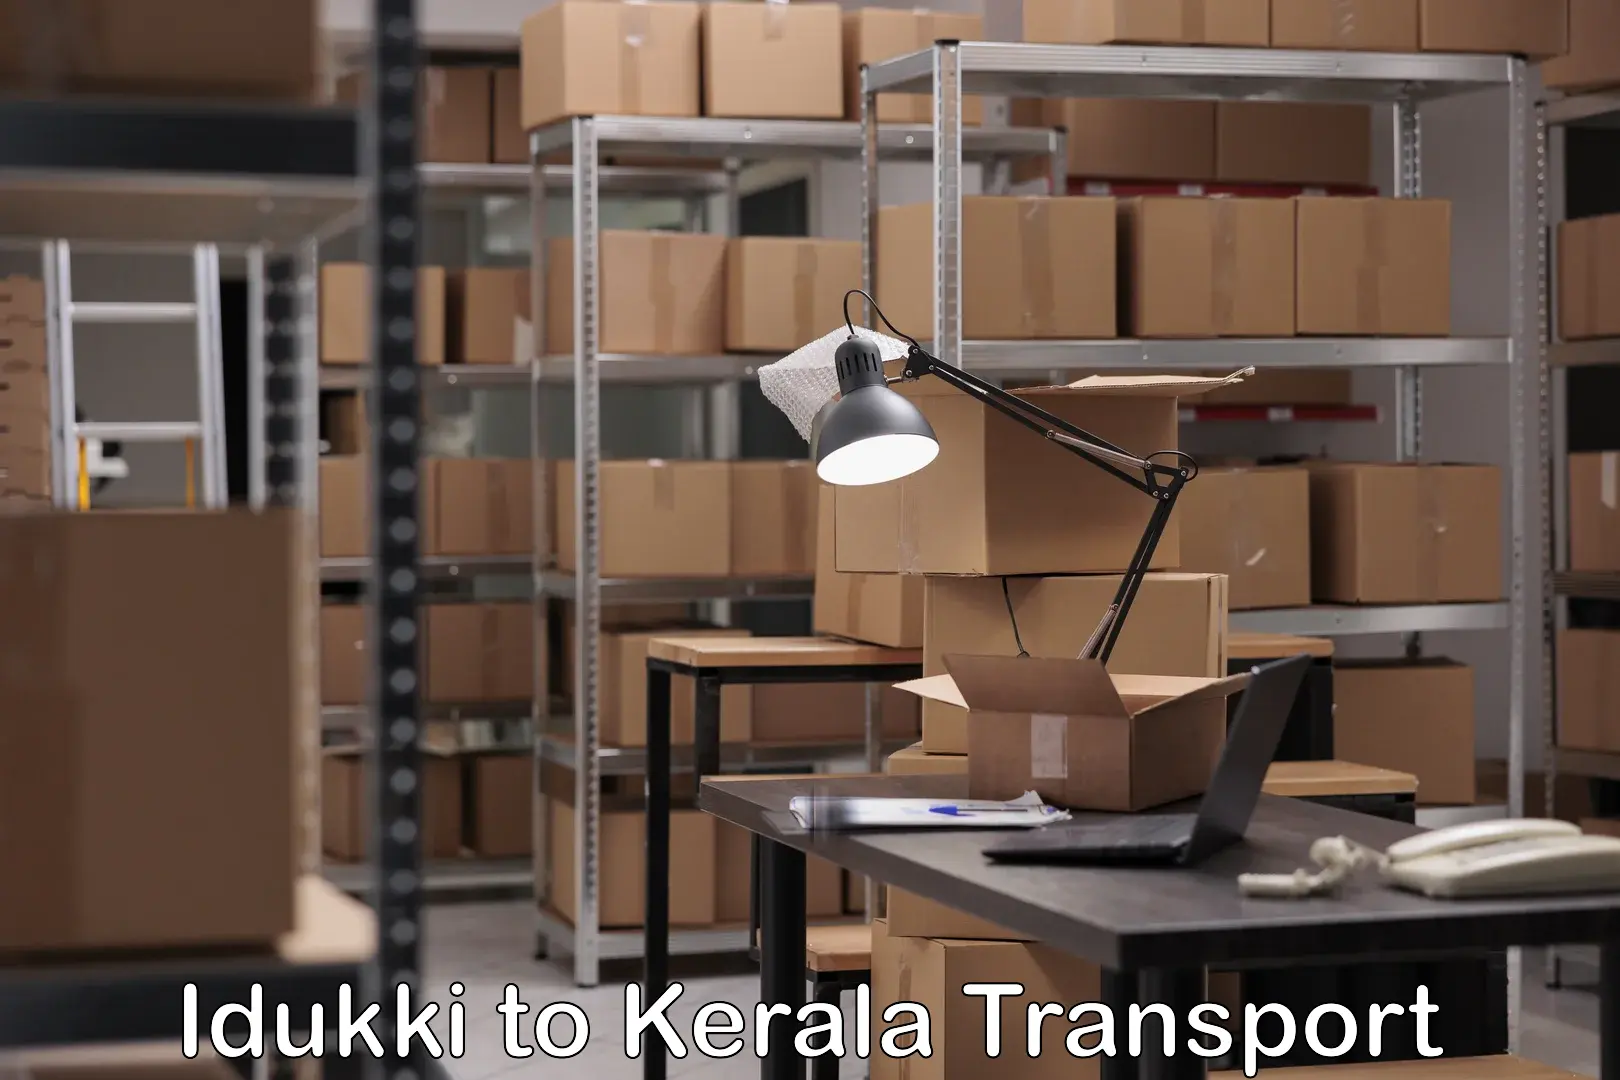 Container transport service Idukki to Kannur